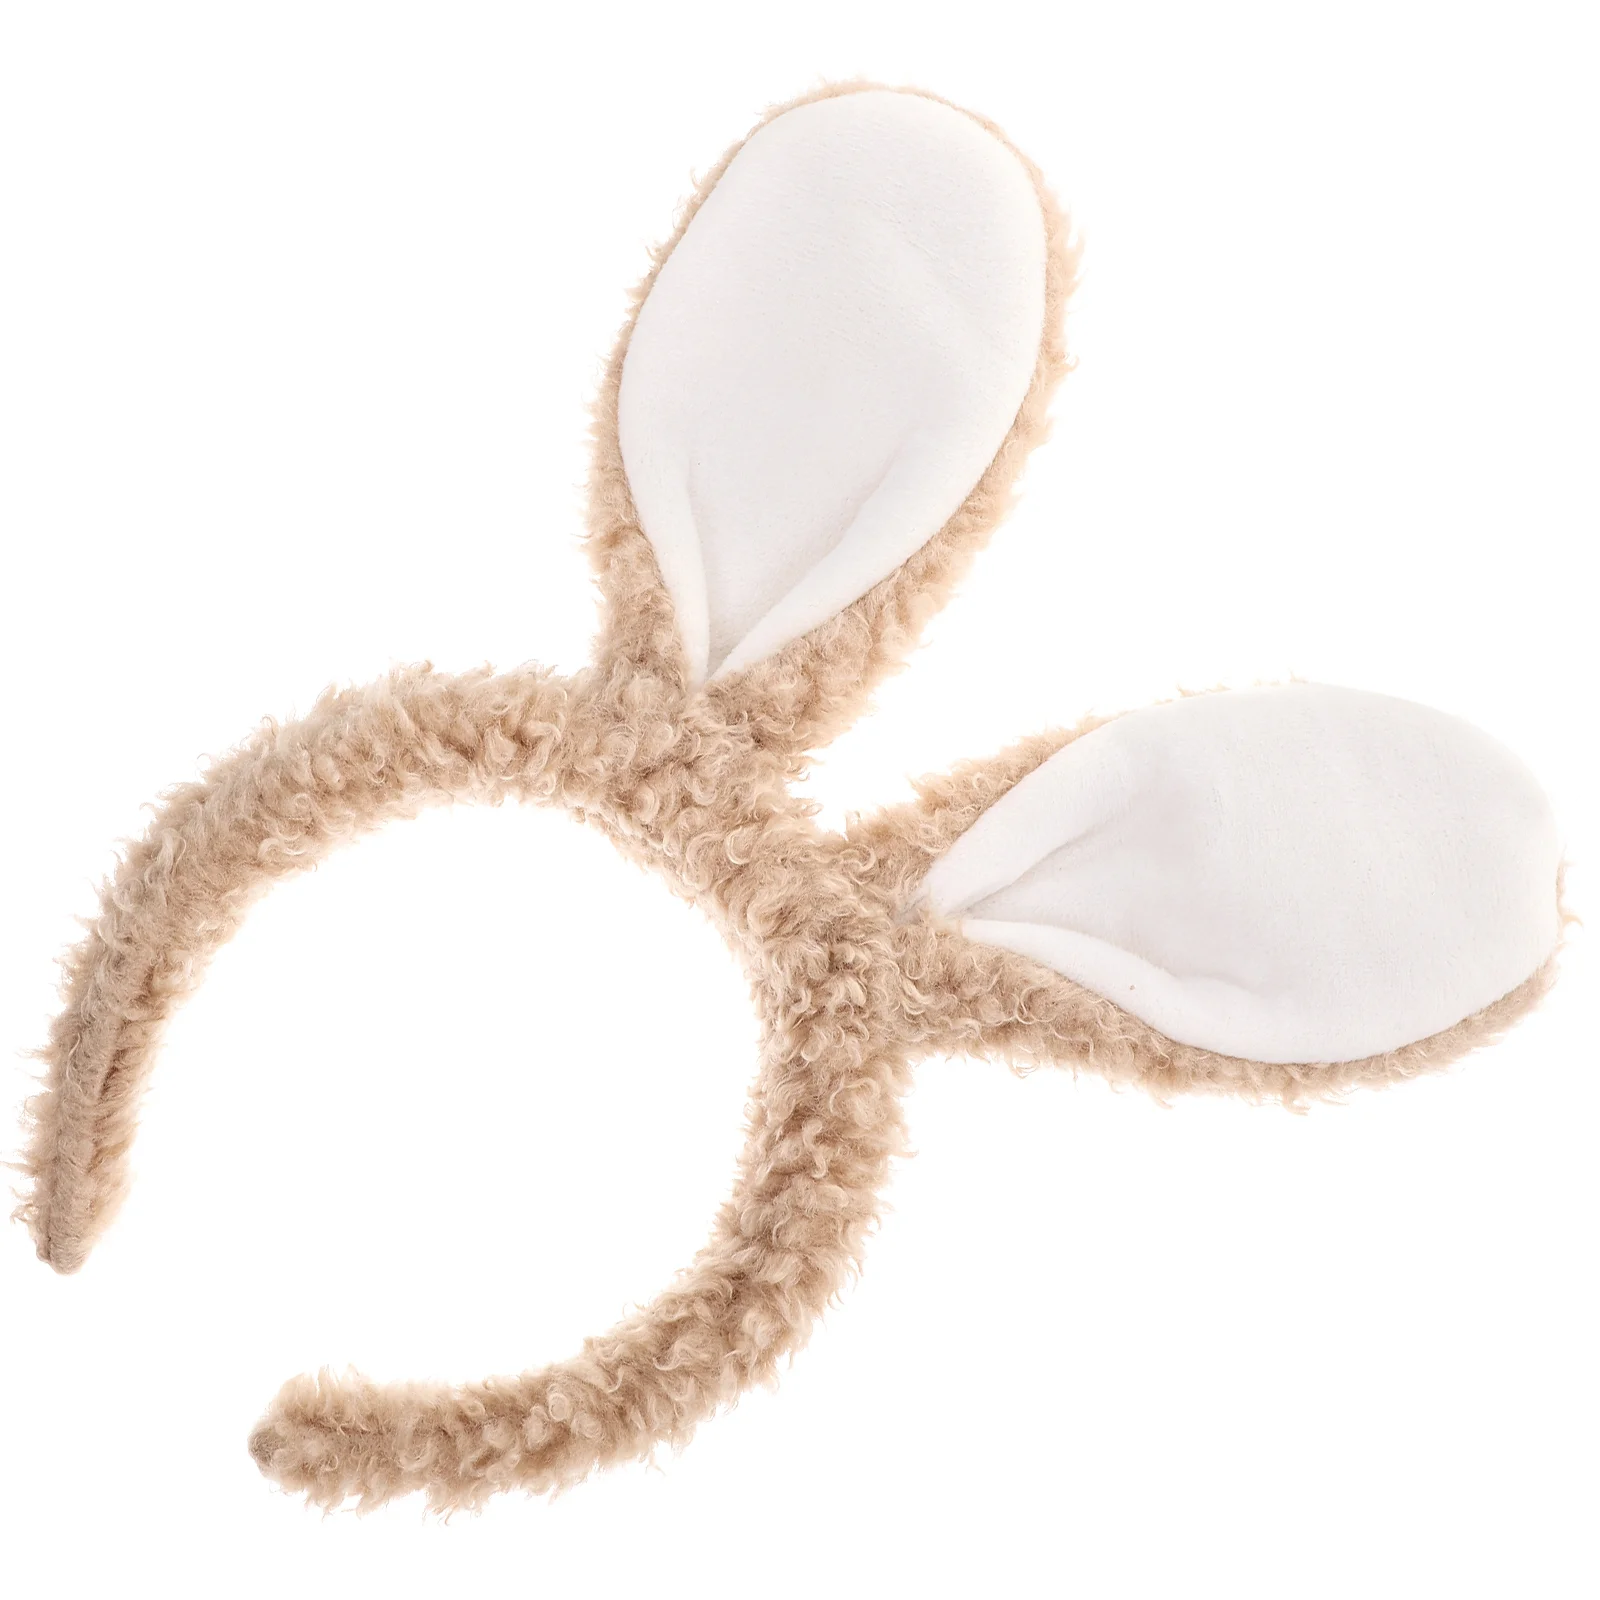 

Bunny Ear Headband Rabbit Ears Headpiece Party Headbands for Adults Accessories Halloween Women Cosplay